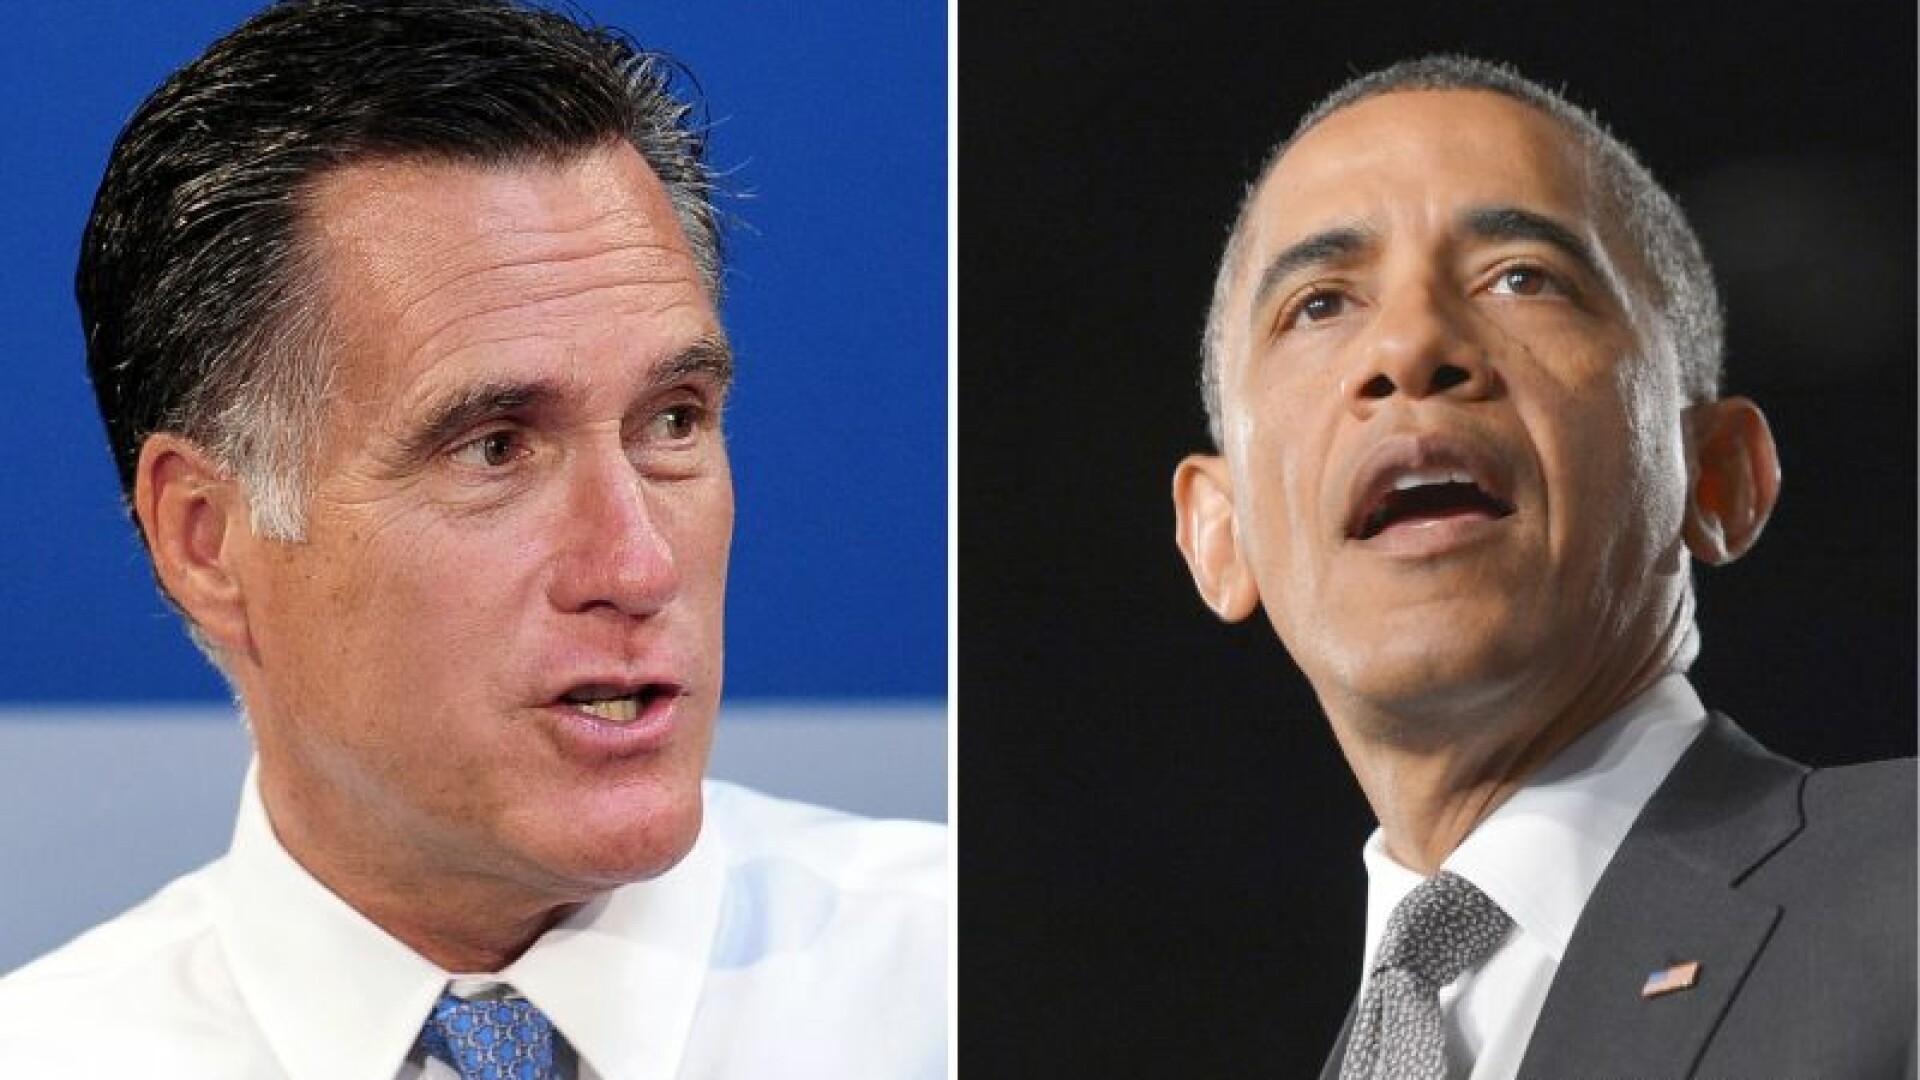 Obama si Romney